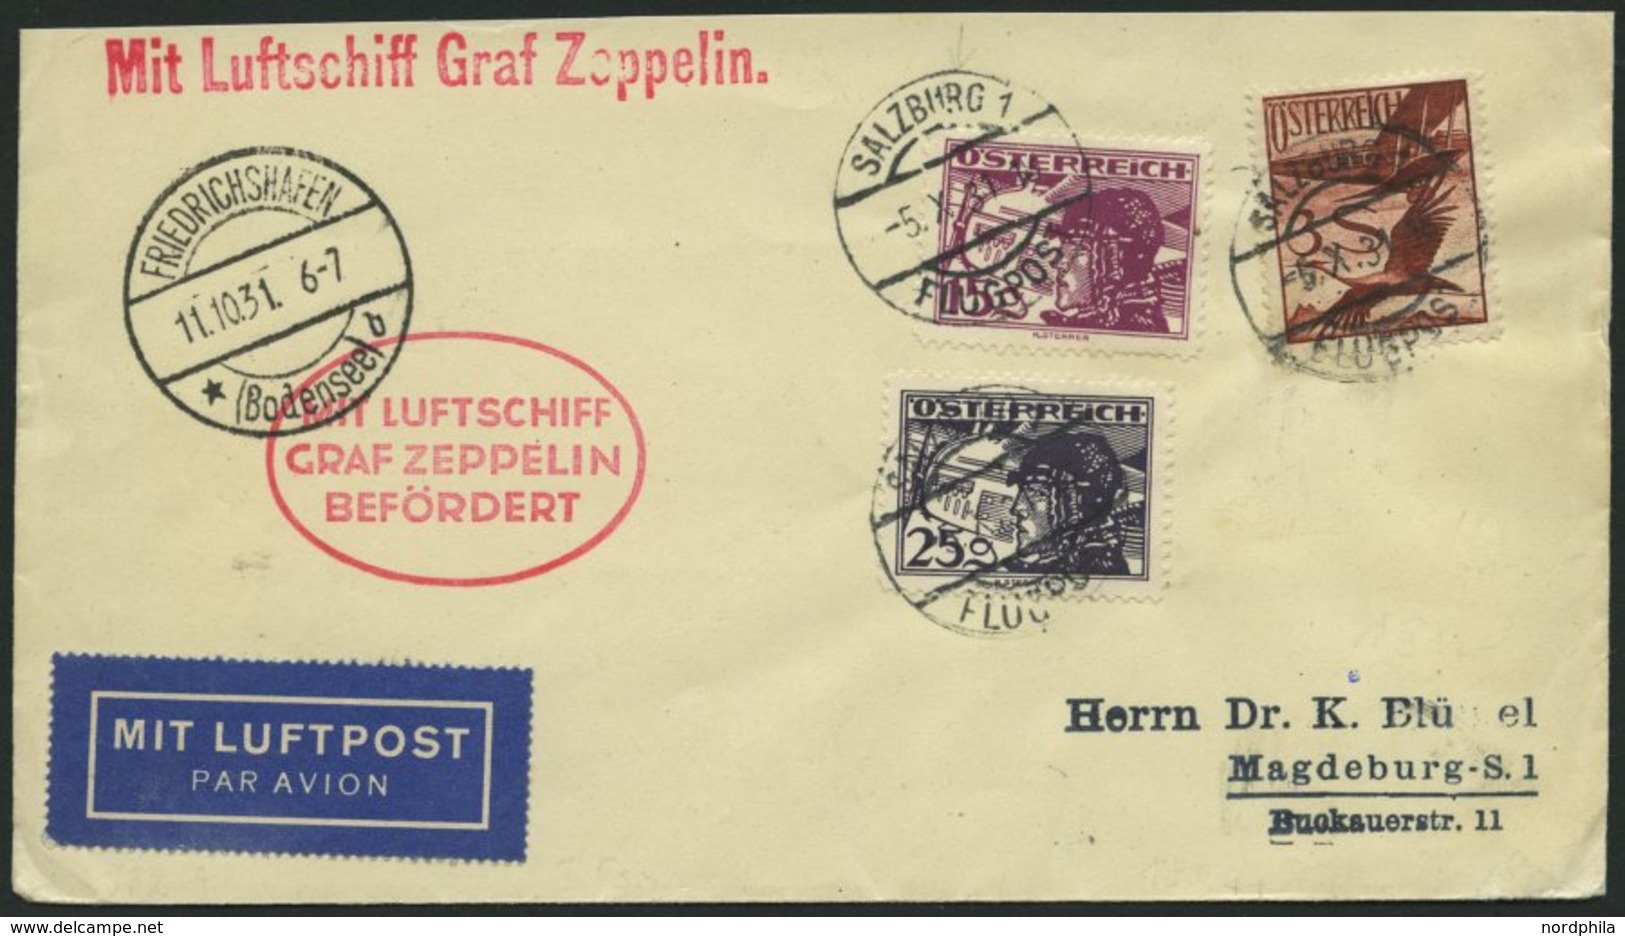 ZULEITUNGSPOST 132 BRIEF, Österreich: 1931, Fahrt Nach Meiningen, Aufgabestempel SALZBURG, Prachtbrief - Zeppelin